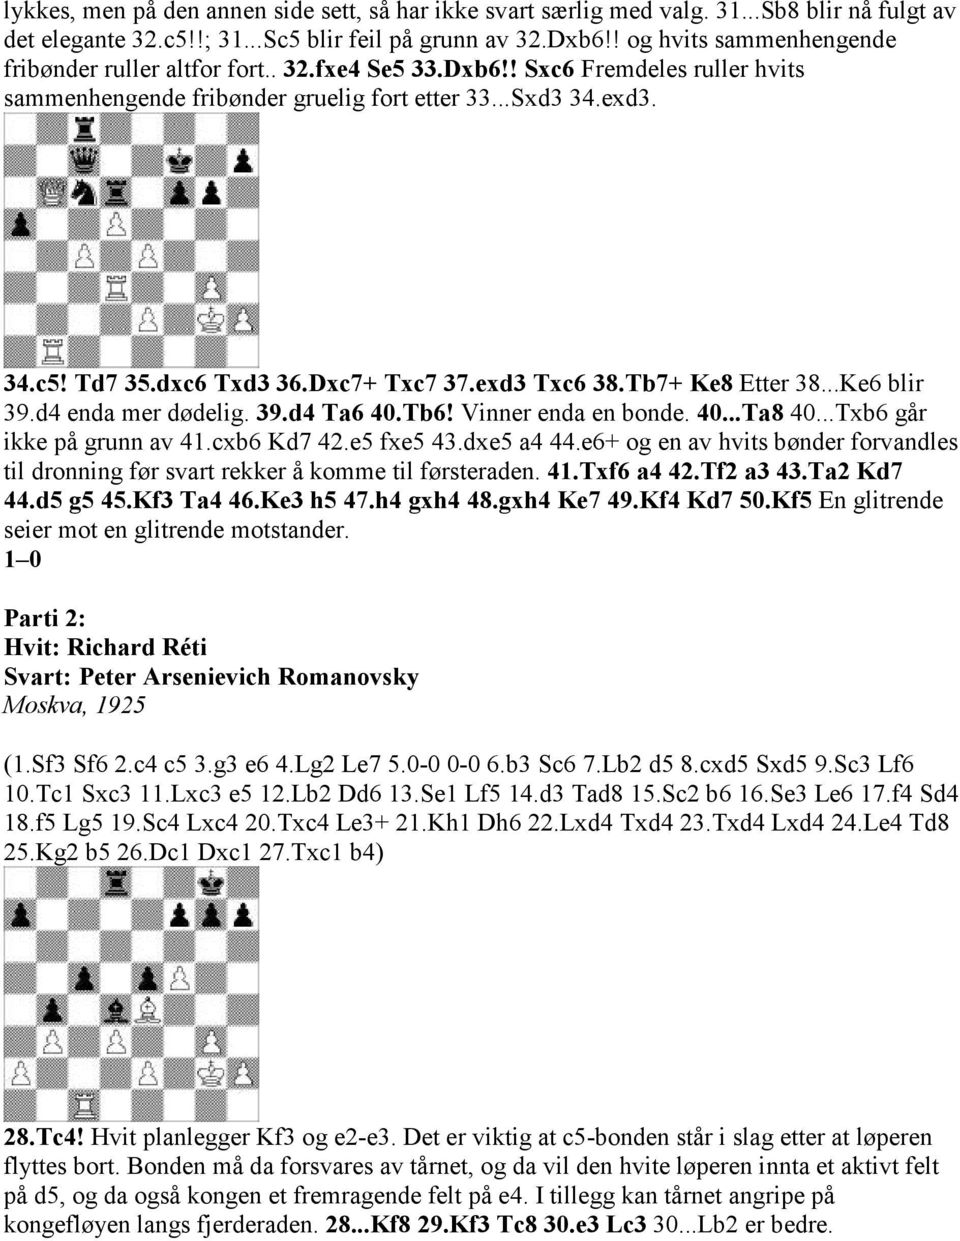 Dxc7+ Txc7 37.exd3 Txc6 38.Tb7+ Ke8 Etter 38...Ke6 blir 39.d4 enda mer dødelig. 39.d4 Ta6 40.Tb6! Vinner enda en bonde. 40...Ta8 40...Txb6 går ikke på grunn av 41.cxb6 Kd7 42.e5 fxe5 43.dxe5 a4 44.